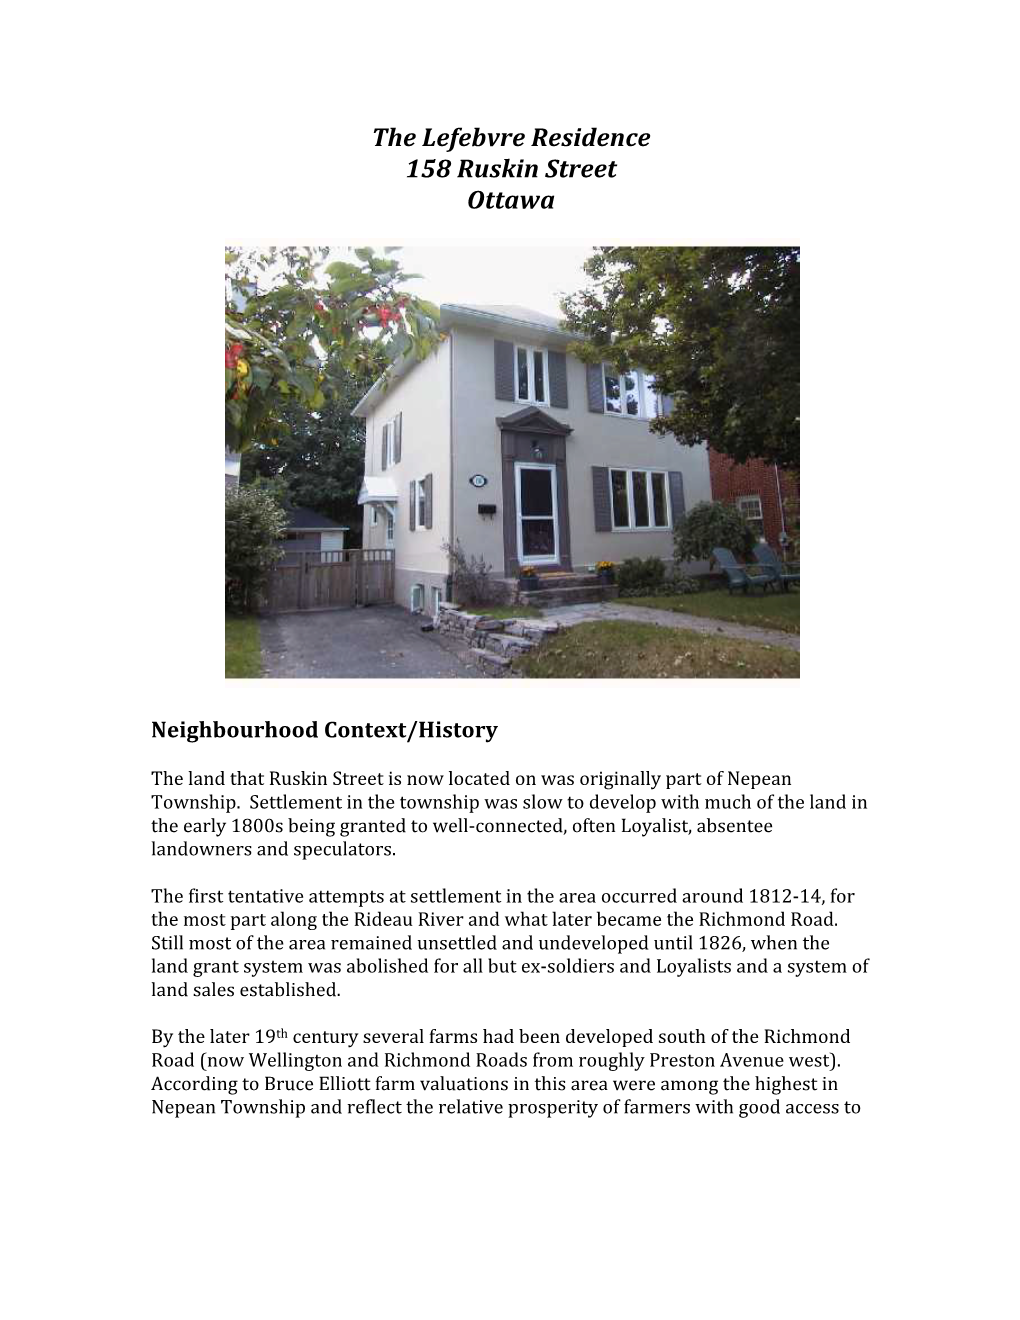 The Lefebvre Residence 158 Ruskin Street Ottawa